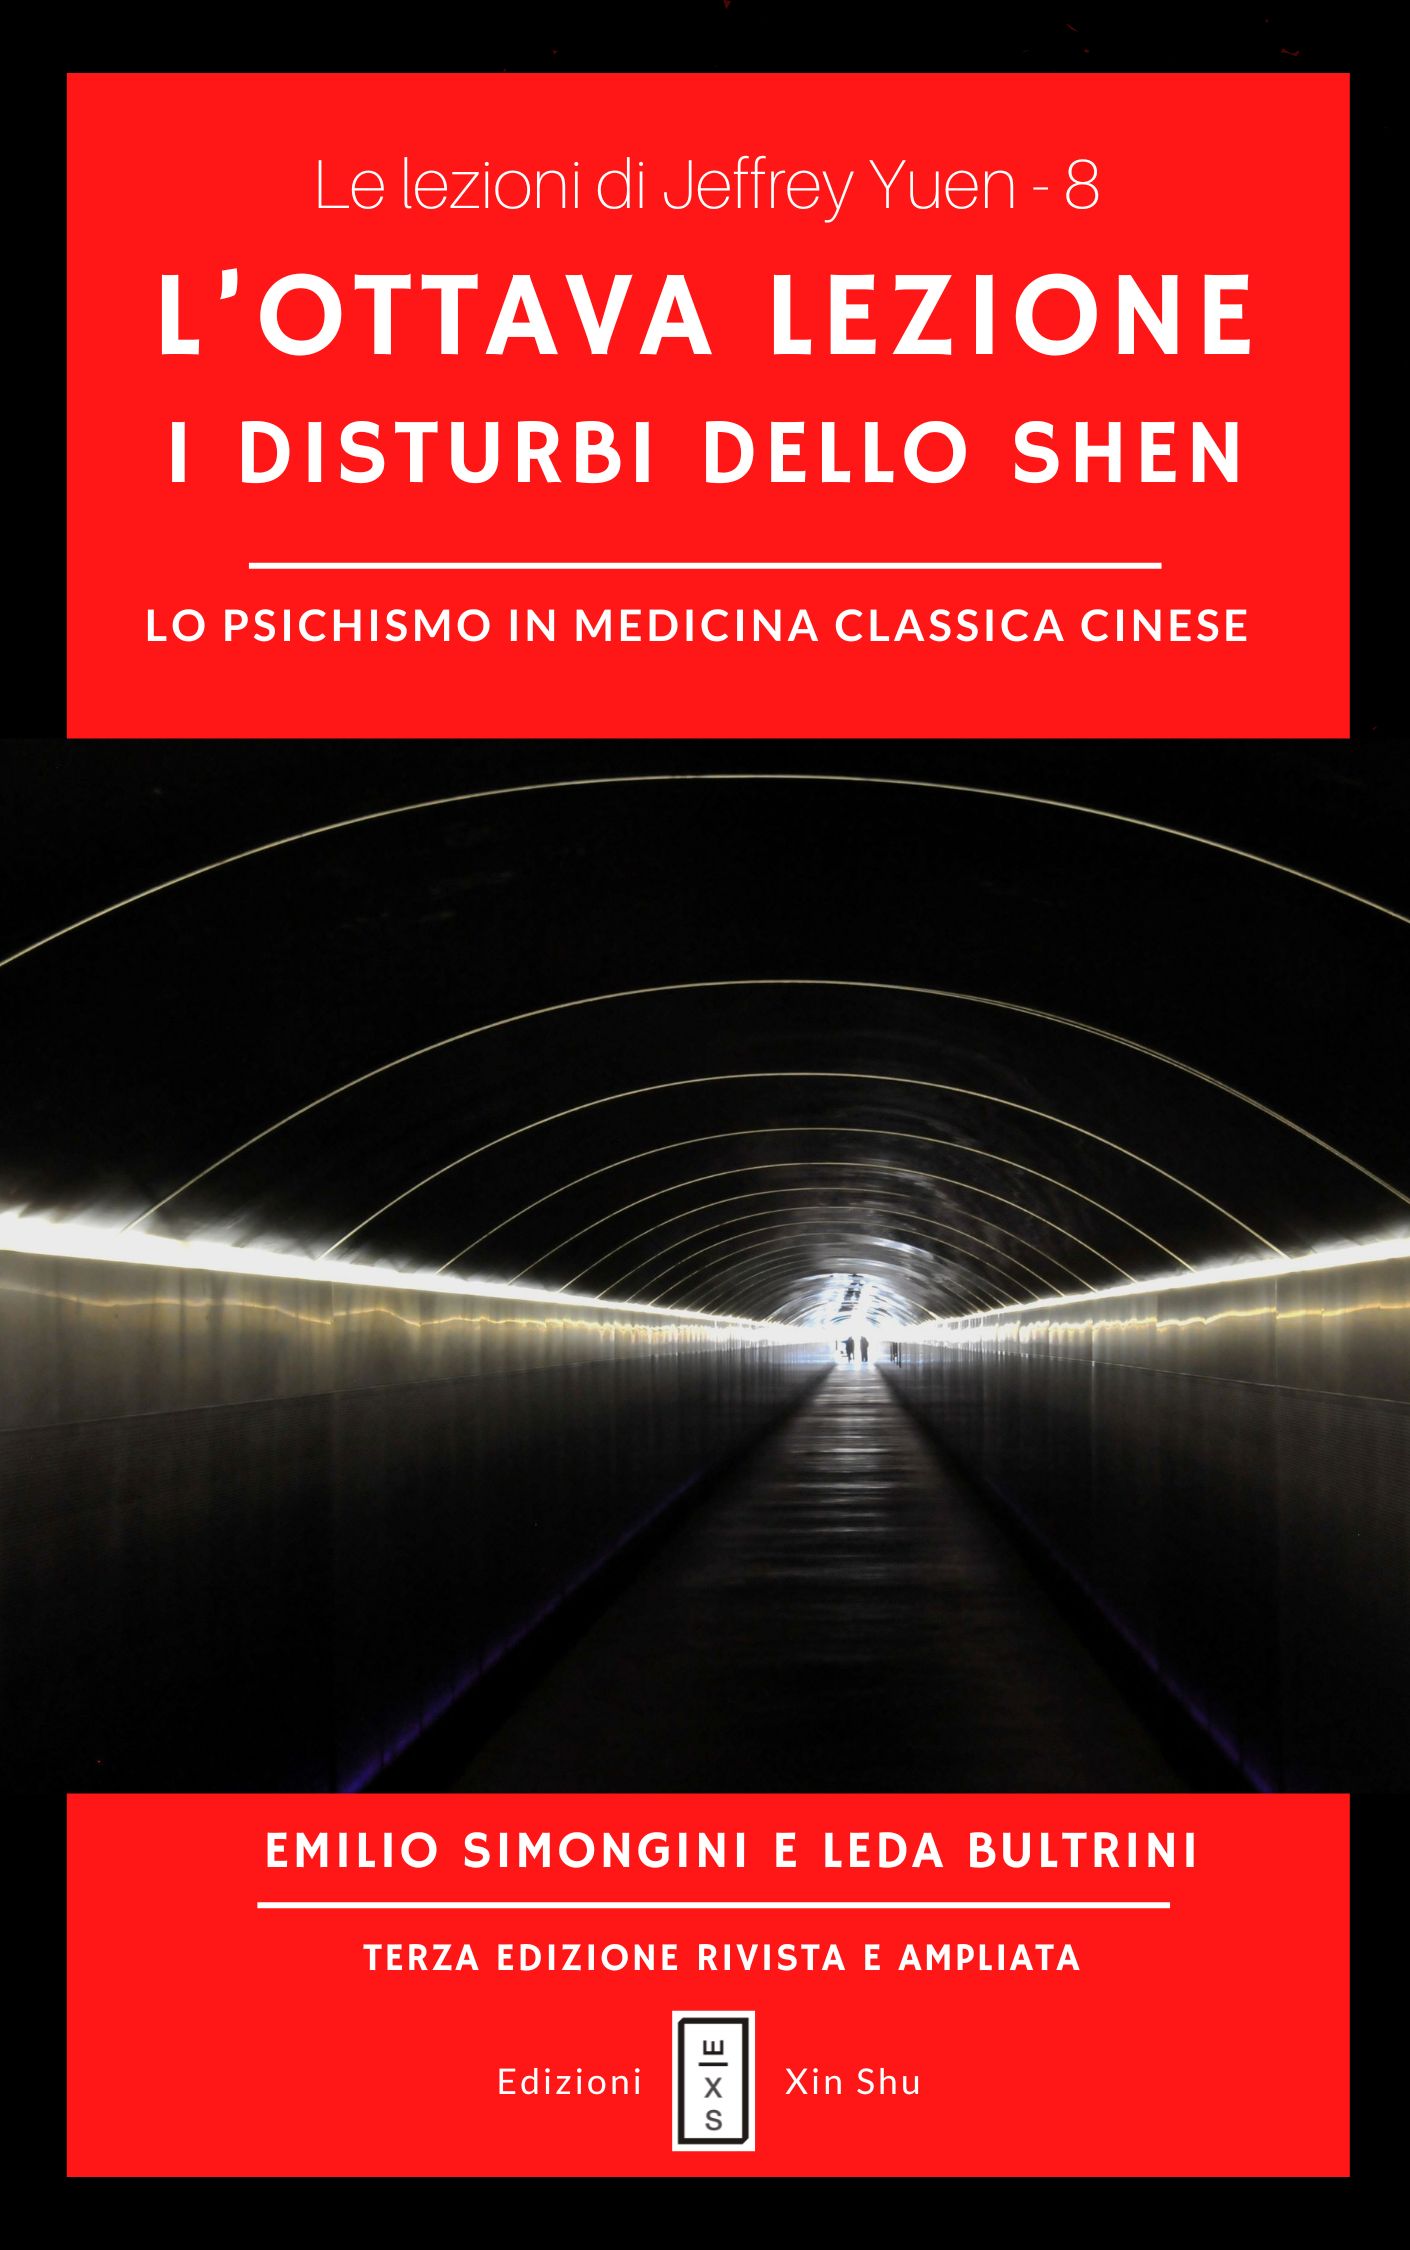 08 - Le lezioni di Jeffrey Yuen - I disturbi dello Shen. Lo psichismo in Medicina Classica Cinese